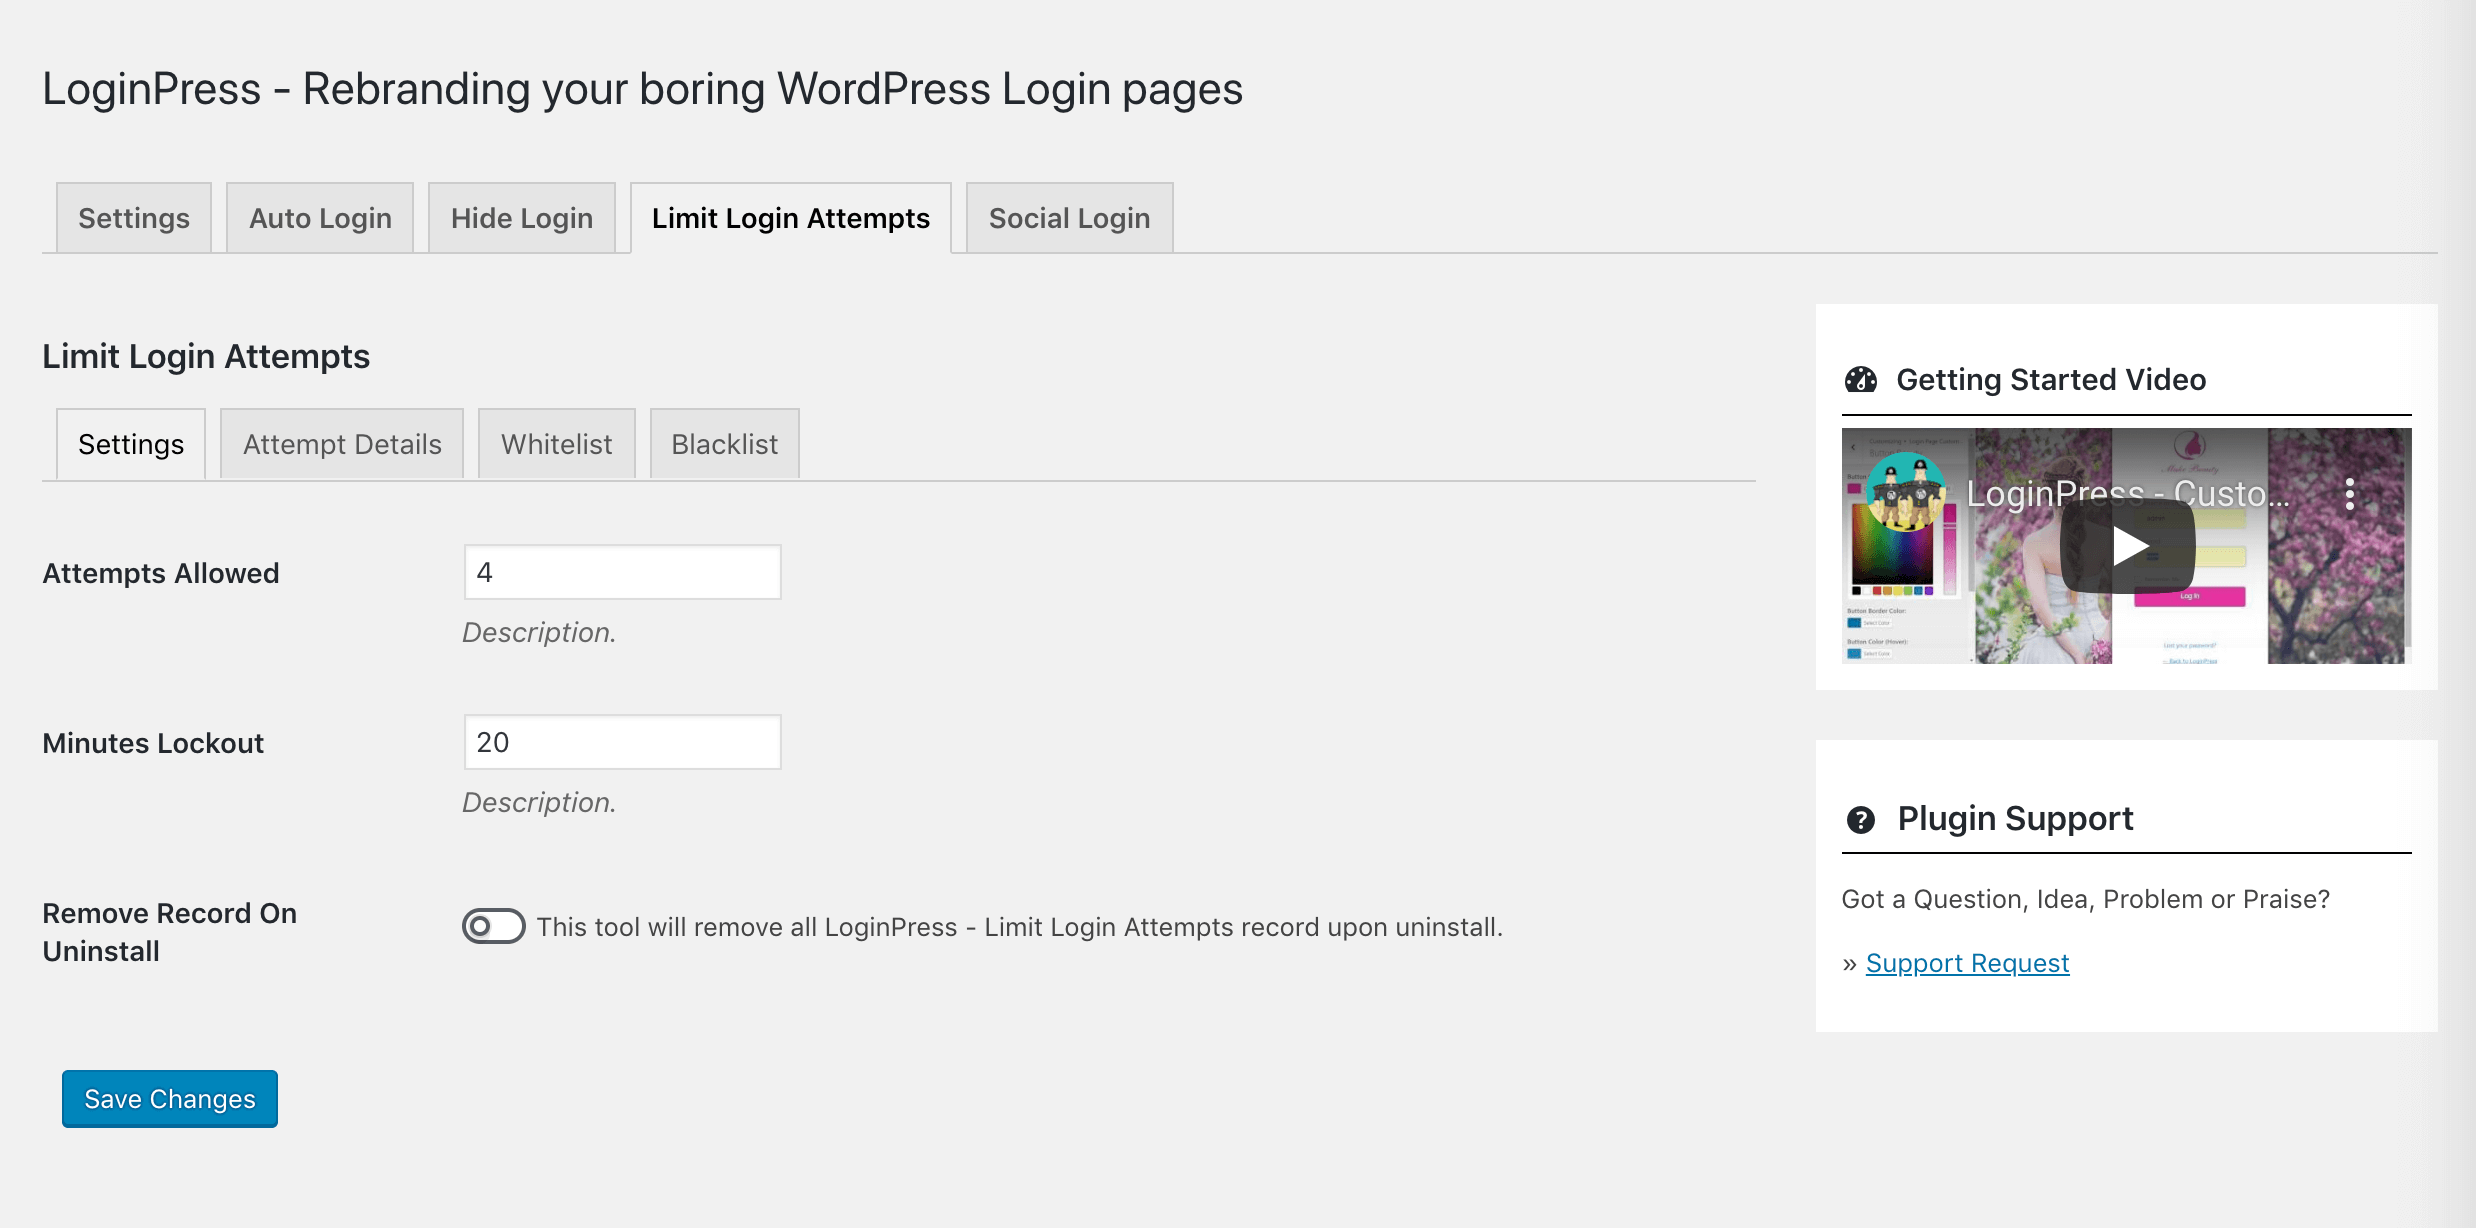 Spécifier la limite de tentatives de connexion et la durée de verrouillage dans LoginPress.